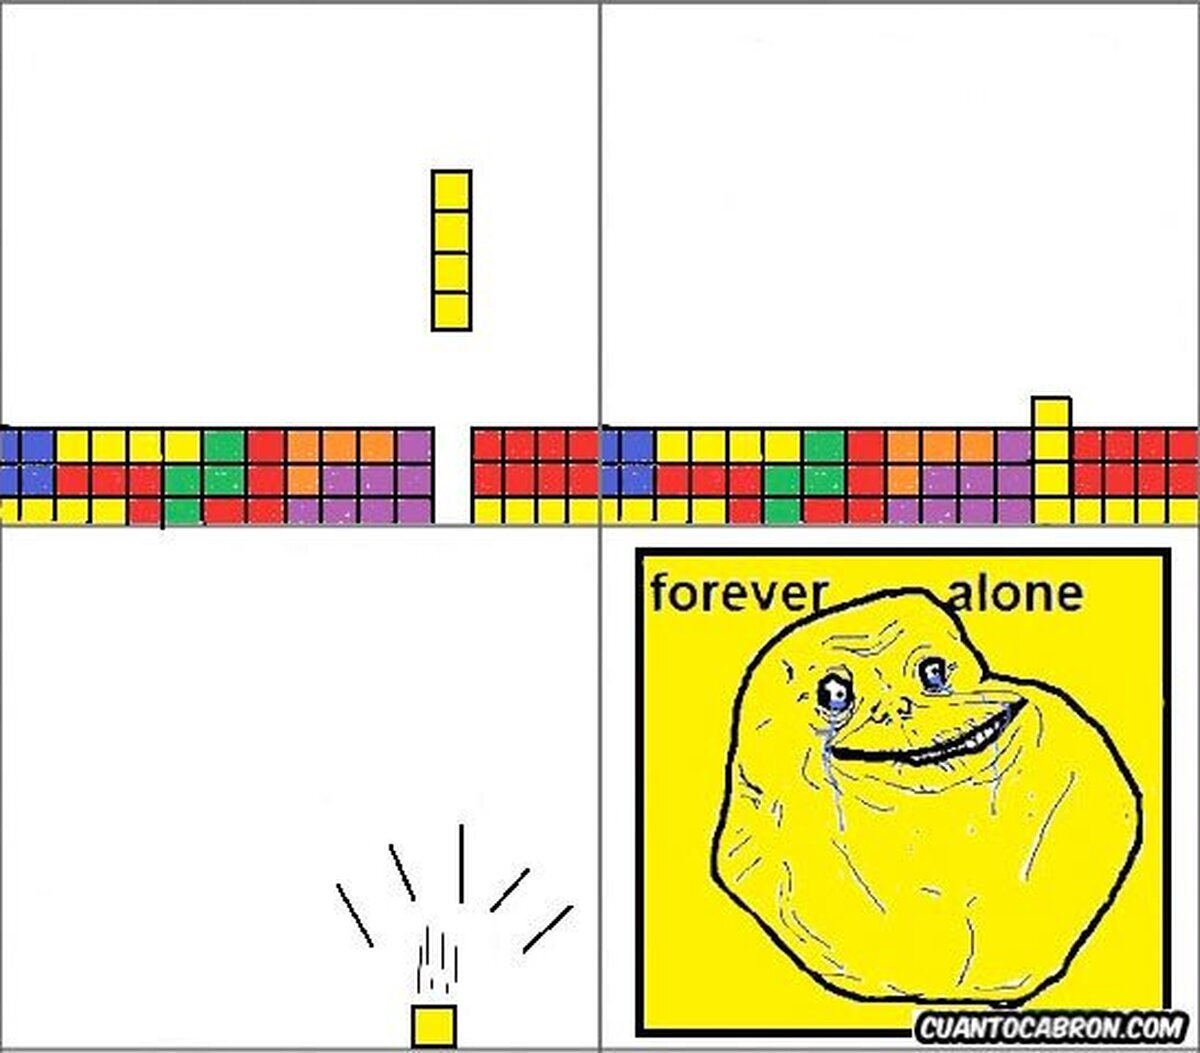 Forever alone - Tetris